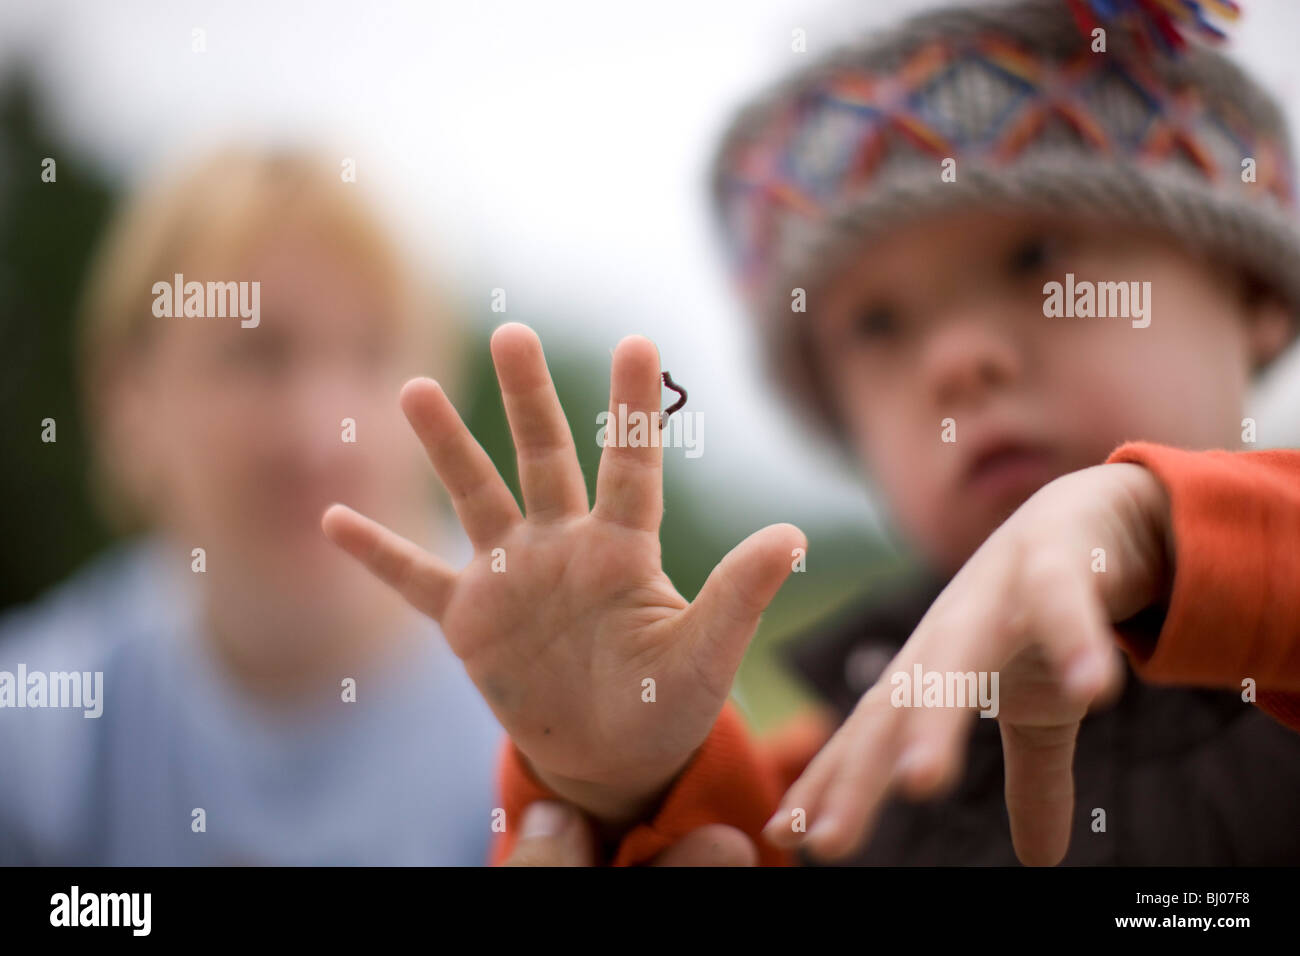 Kleiner Junge eine Raupe kriecht auf seiner Hand zu betrachten. Stockfoto